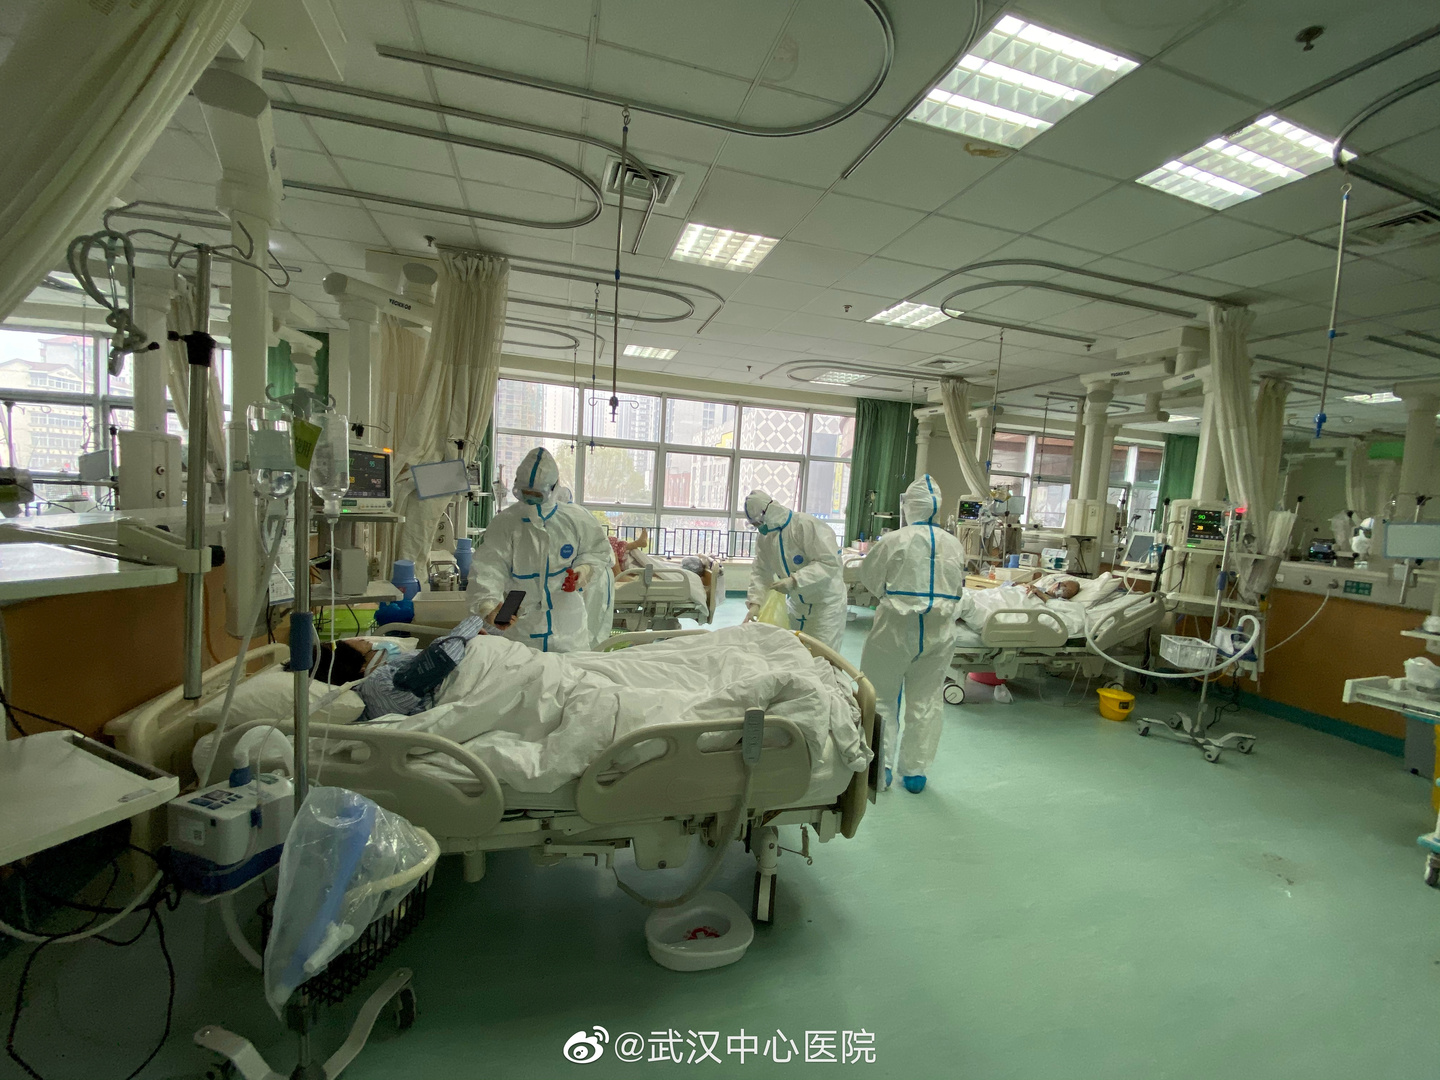 الصين تعلن حالة الطوارئ القصوى بسبب انتشار فيروس كورونا